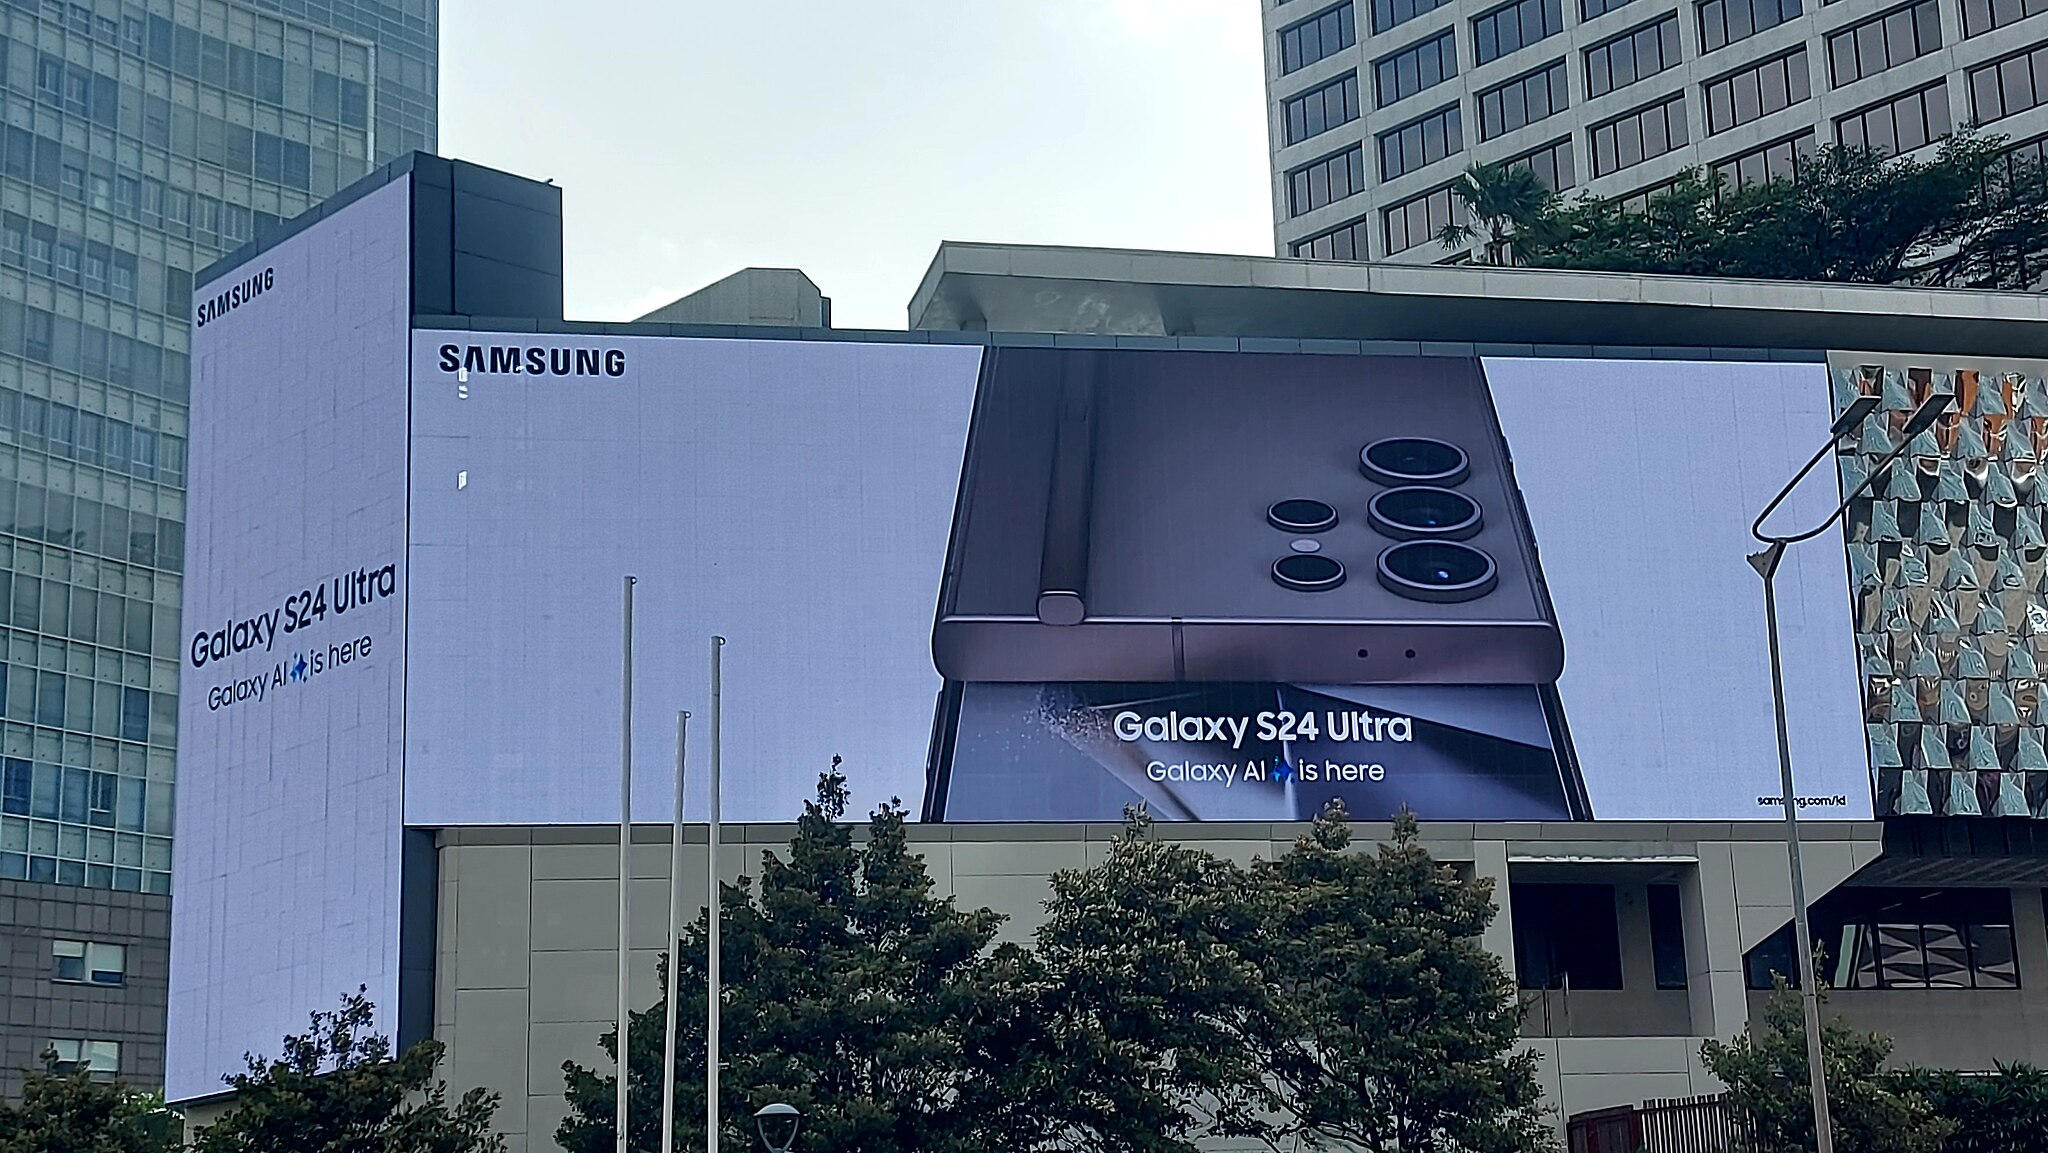 Samsung réorganise le plan du métro de Londres pour promouvoir le « Cercle de recherche » du Galaxy S24